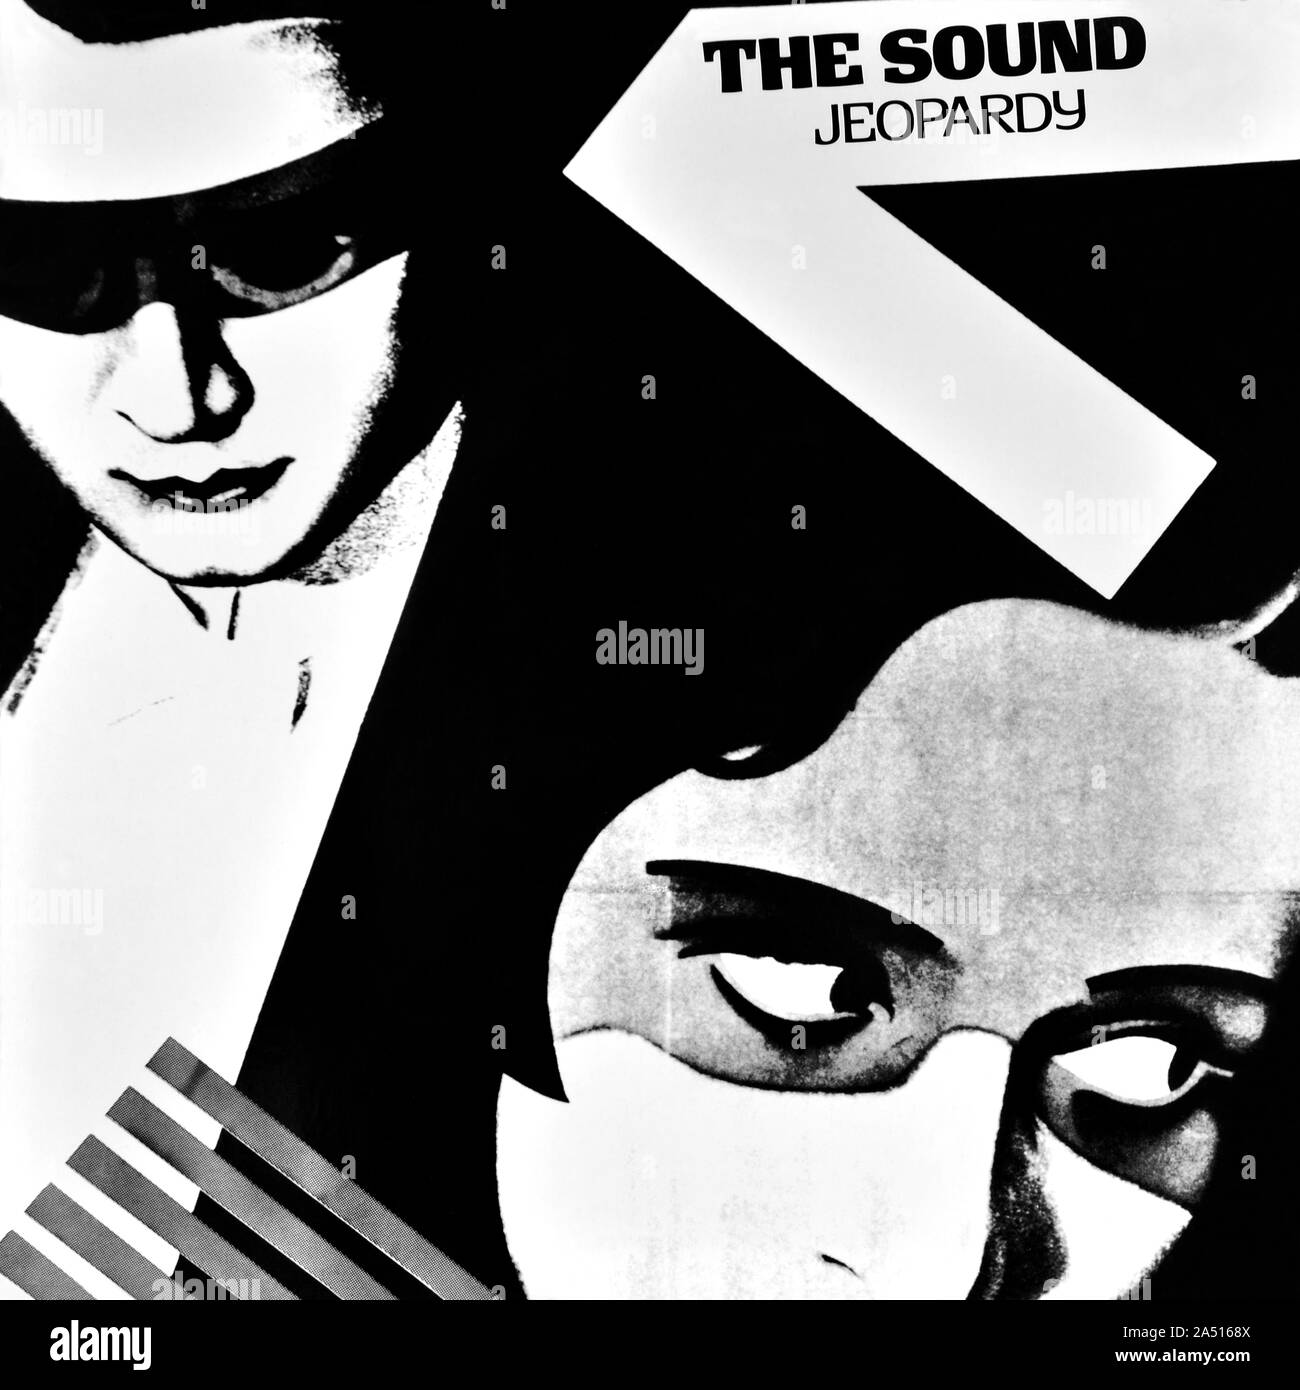 The Sound - couverture originale de l'album en vinyle - Jeopardy - 1980 Banque D'Images